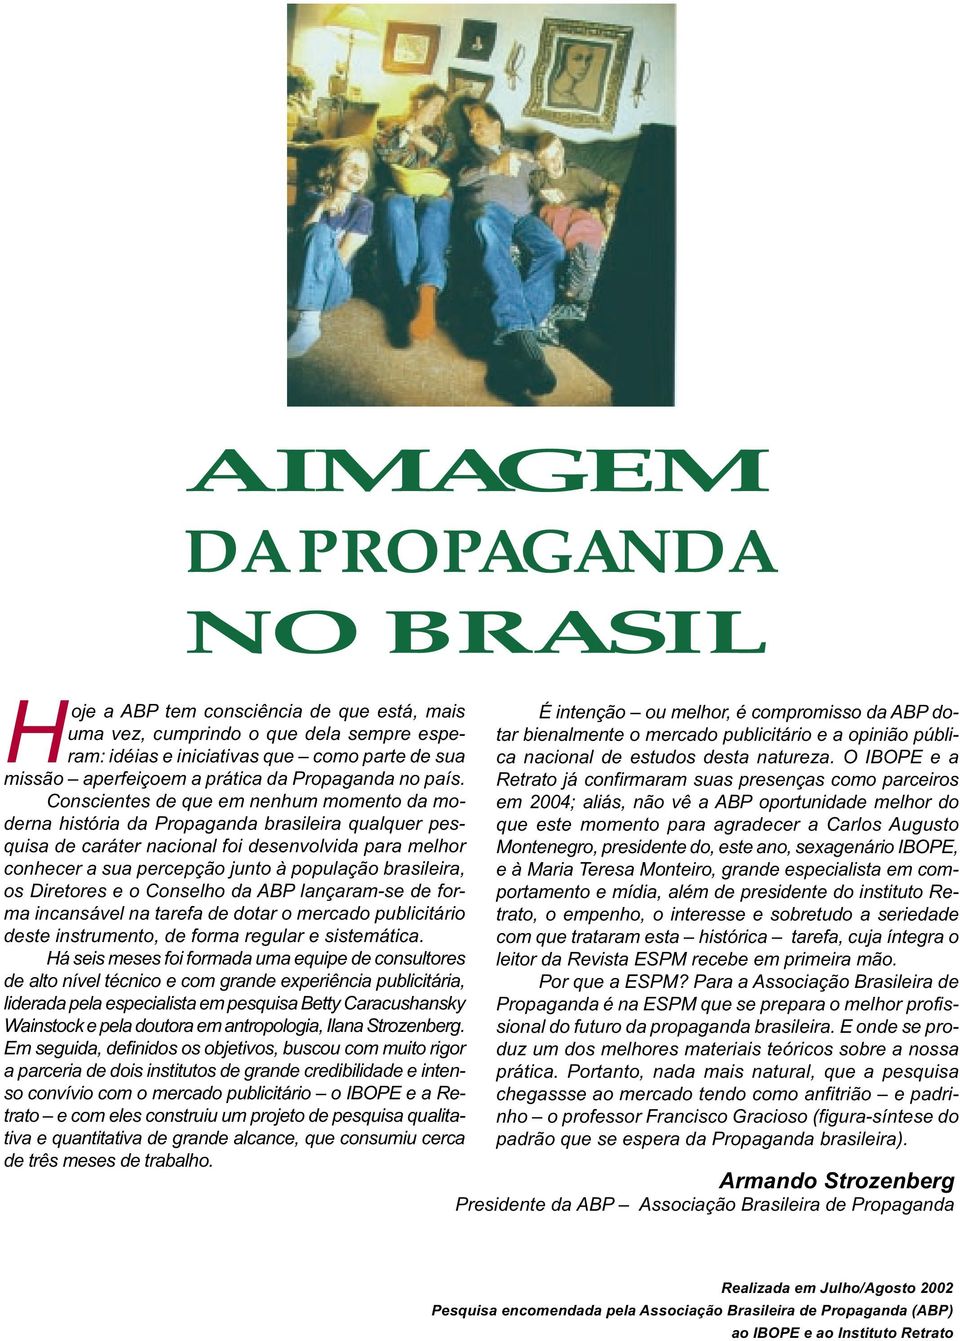 Conscientes de que em nenhum momento da moderna história da Propaganda brasileira qualquer pesquisa de caráter nacional foi desenvolvida para melhor conhecer a sua percepção junto à população